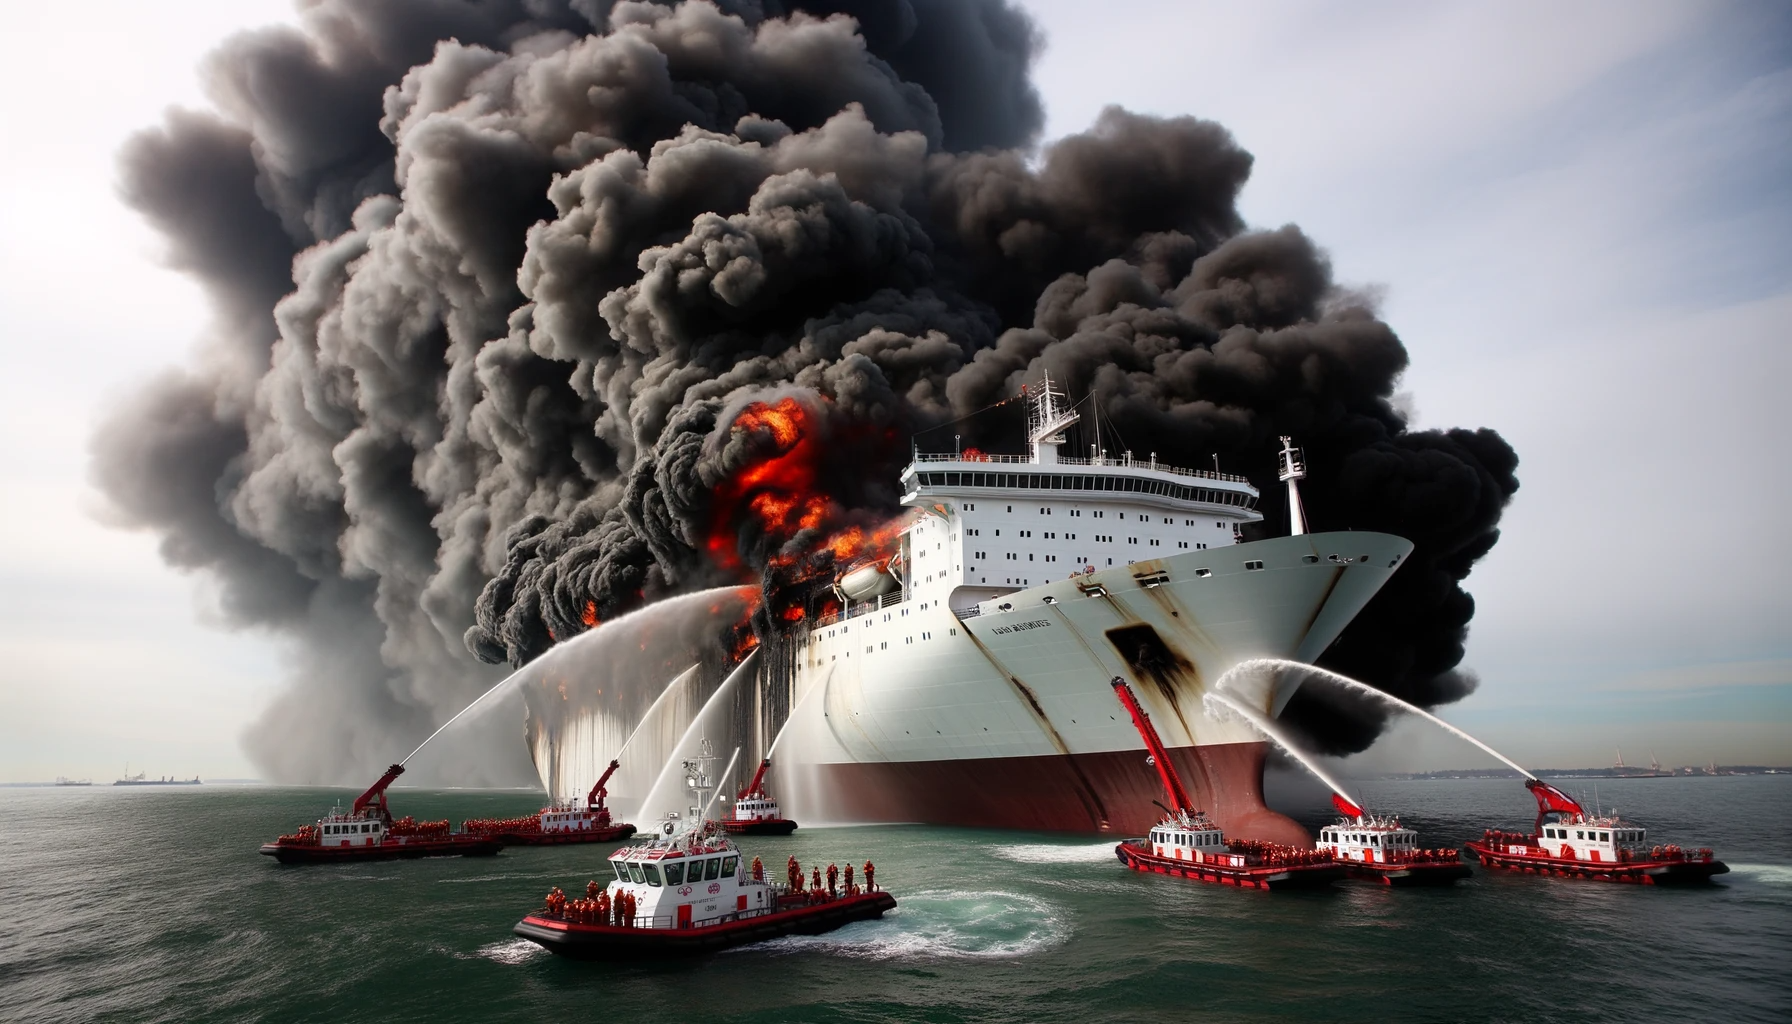 Voitures électrique risques incendies de navires